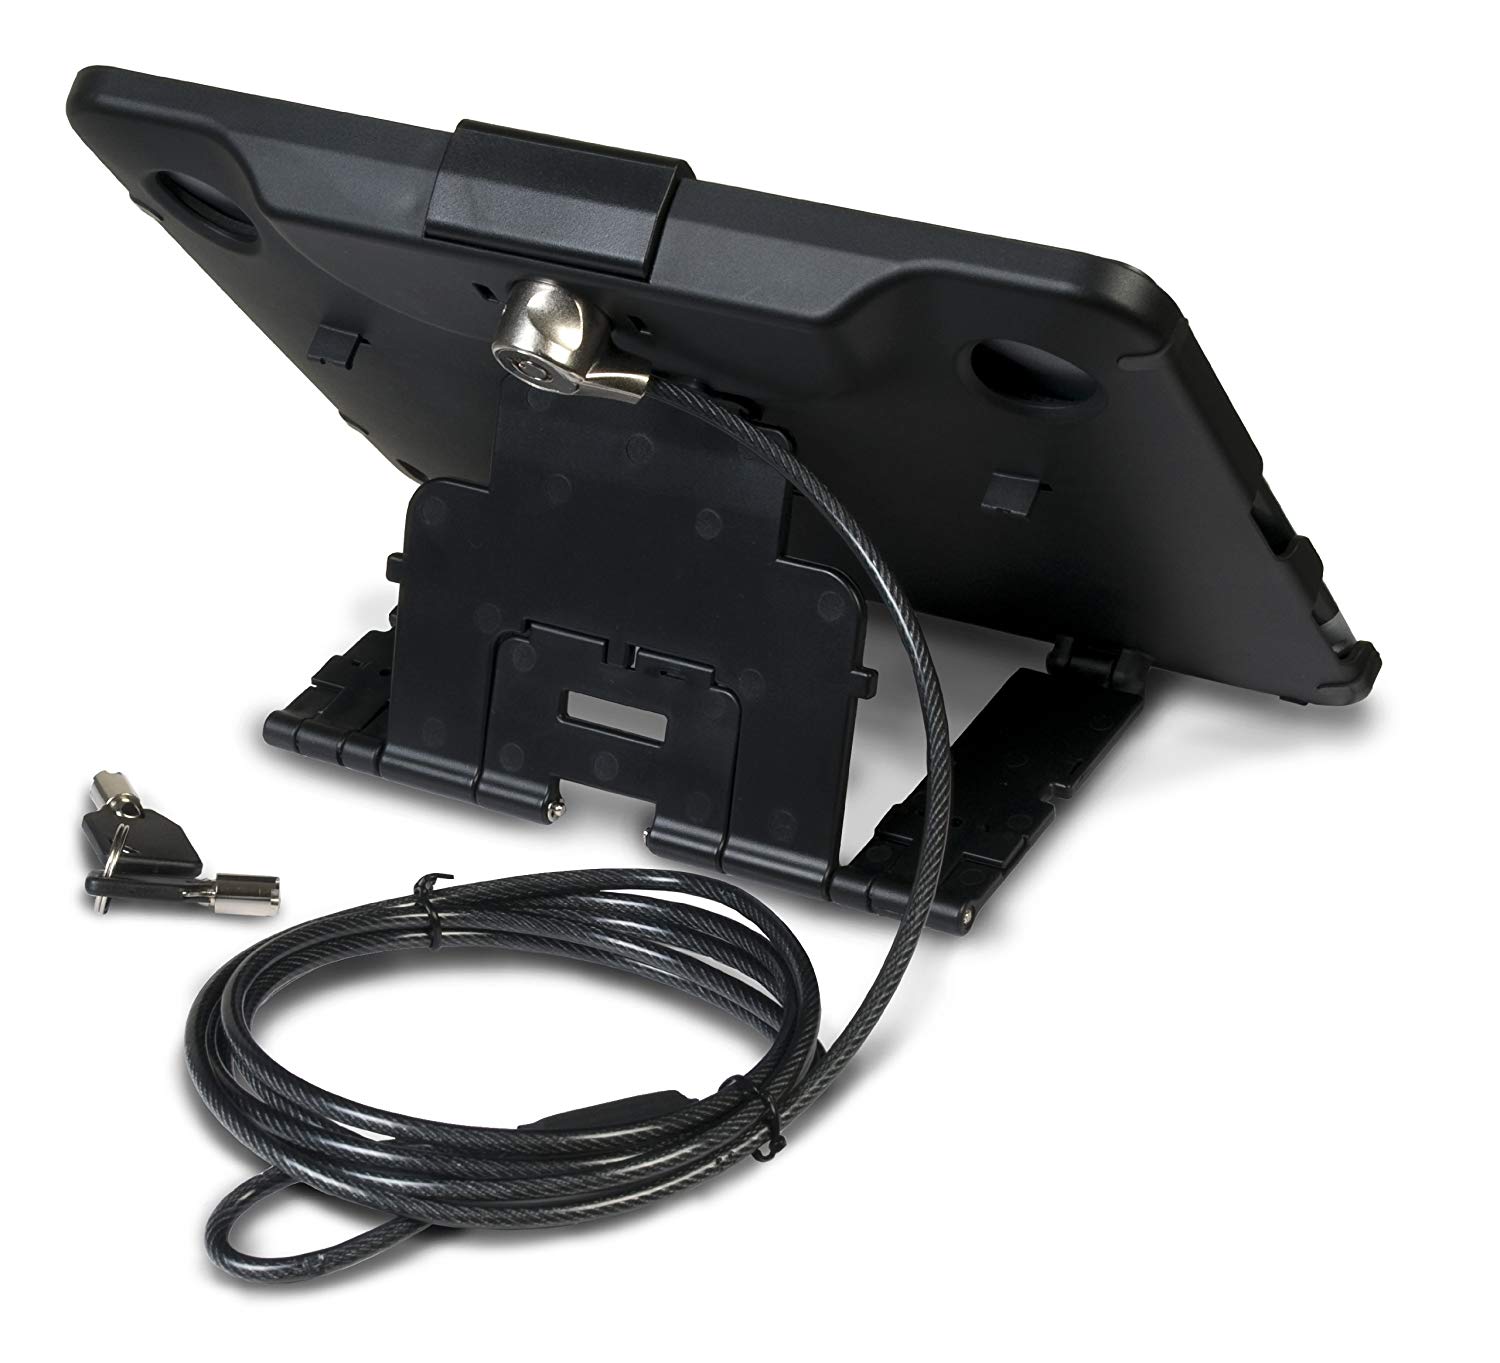 Estuche antirrobo PAD-ATC digital de CTA con soporte incorporado con inserto de espuma para iPads